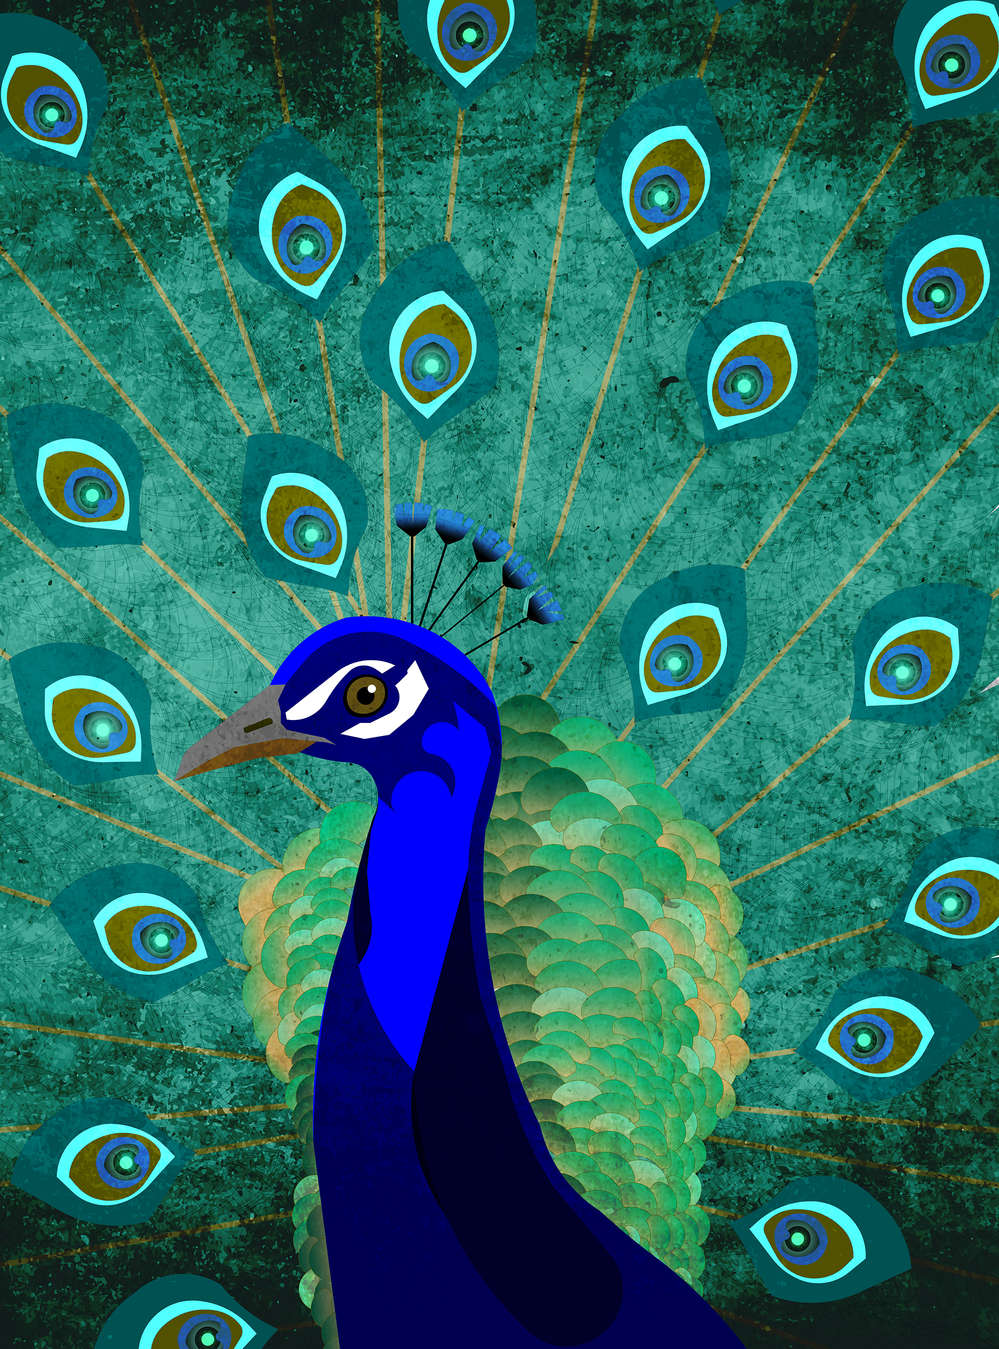             Peacock Behang met Verenwiel - Blauw, Groen, Petrol
        